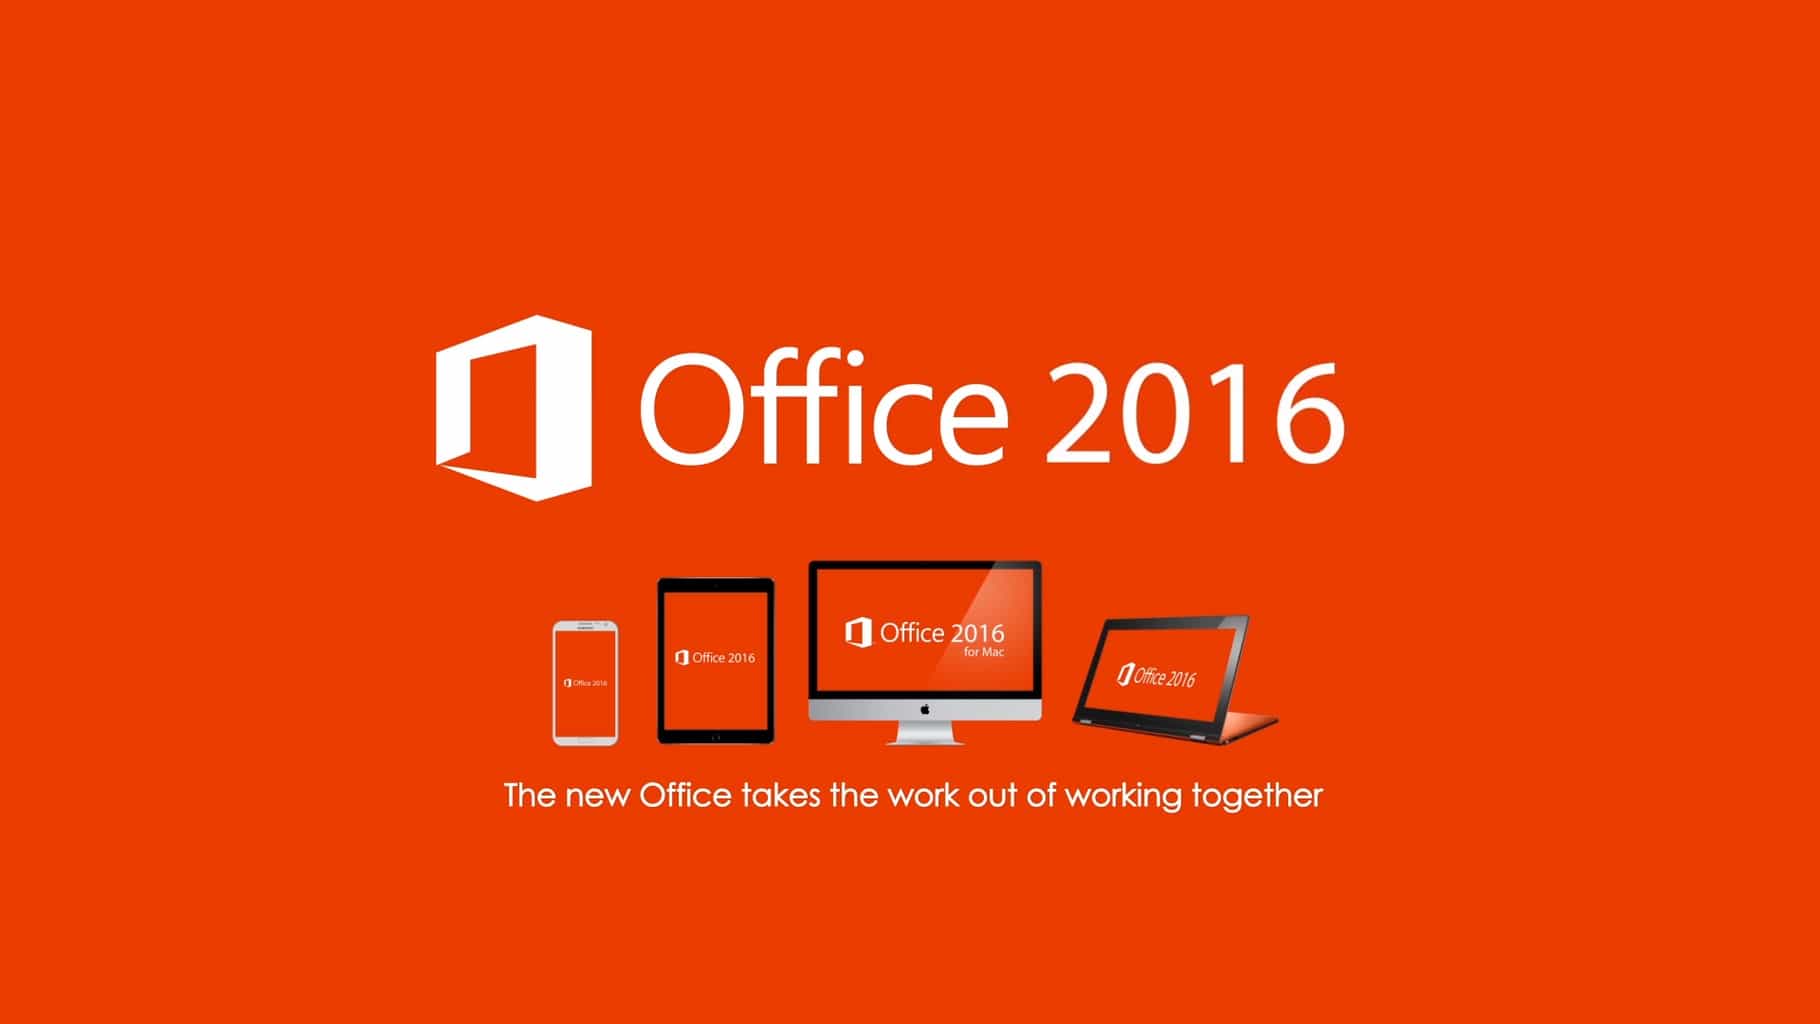 Microsoft Office 2016 ya está aquí. Conoce a fondo la nueva versión de esta suite ofimática ...